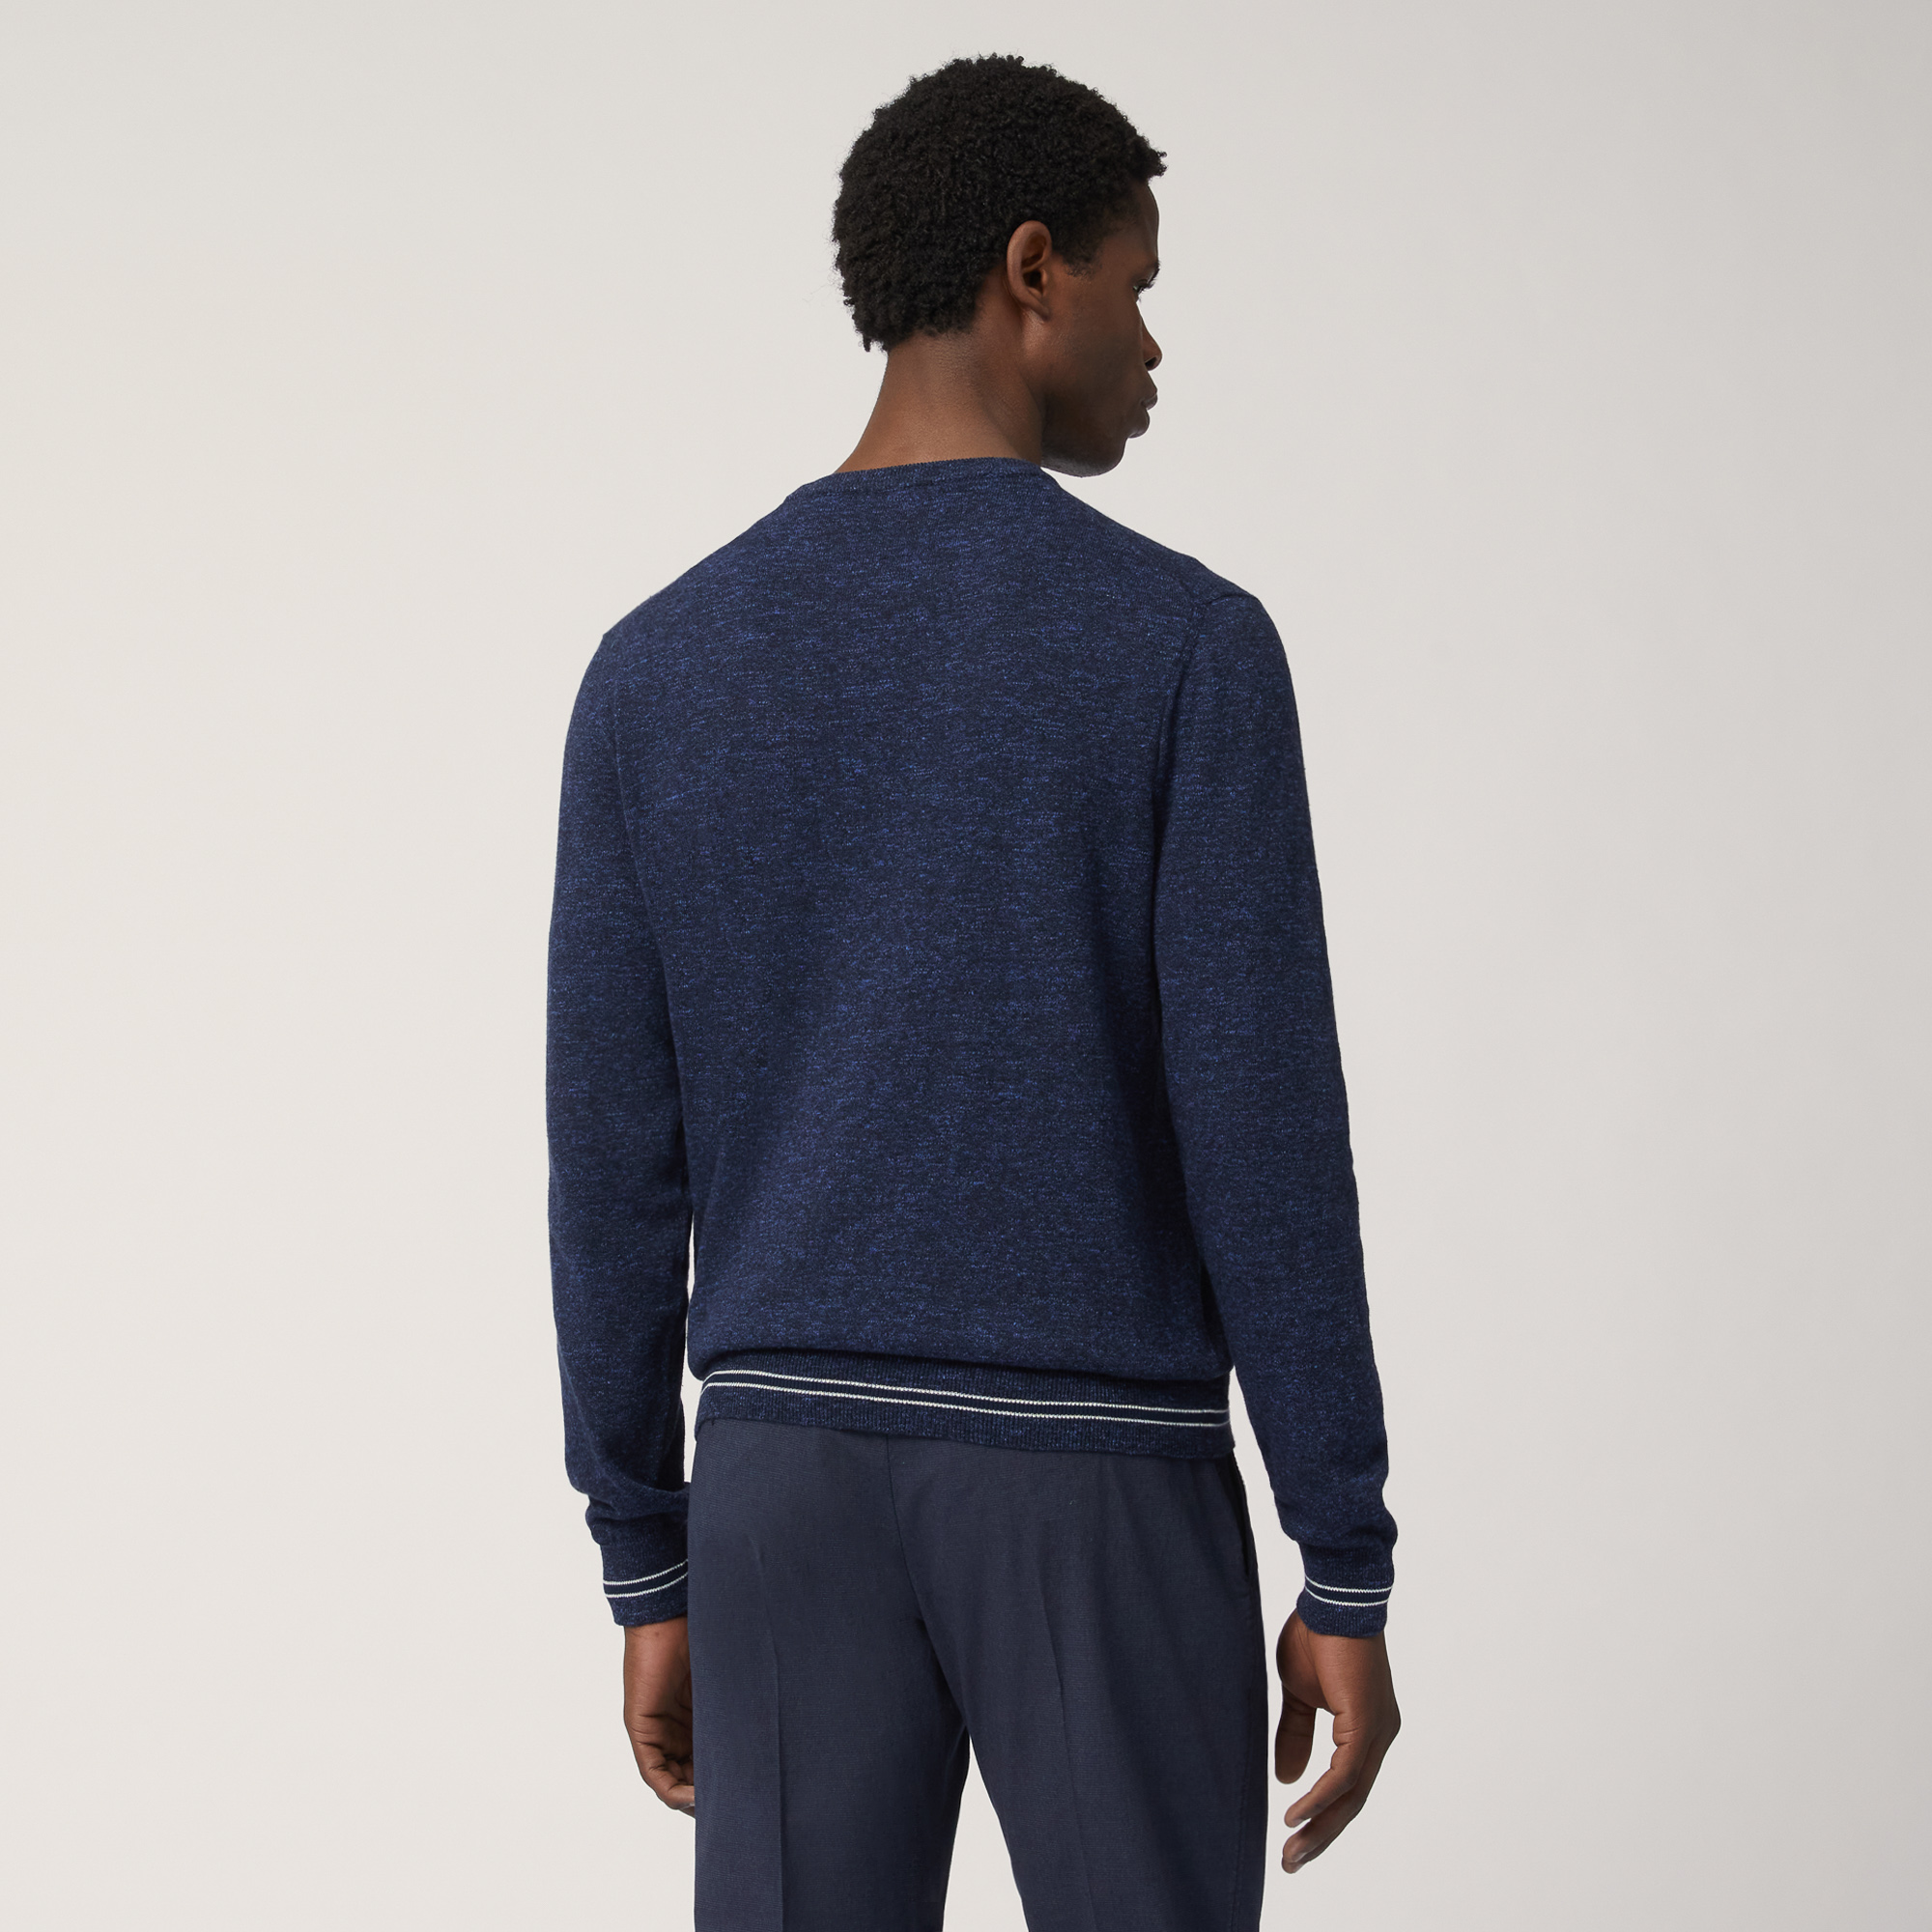 Pullover Mit Streifen-Details, Blau, large image number 1